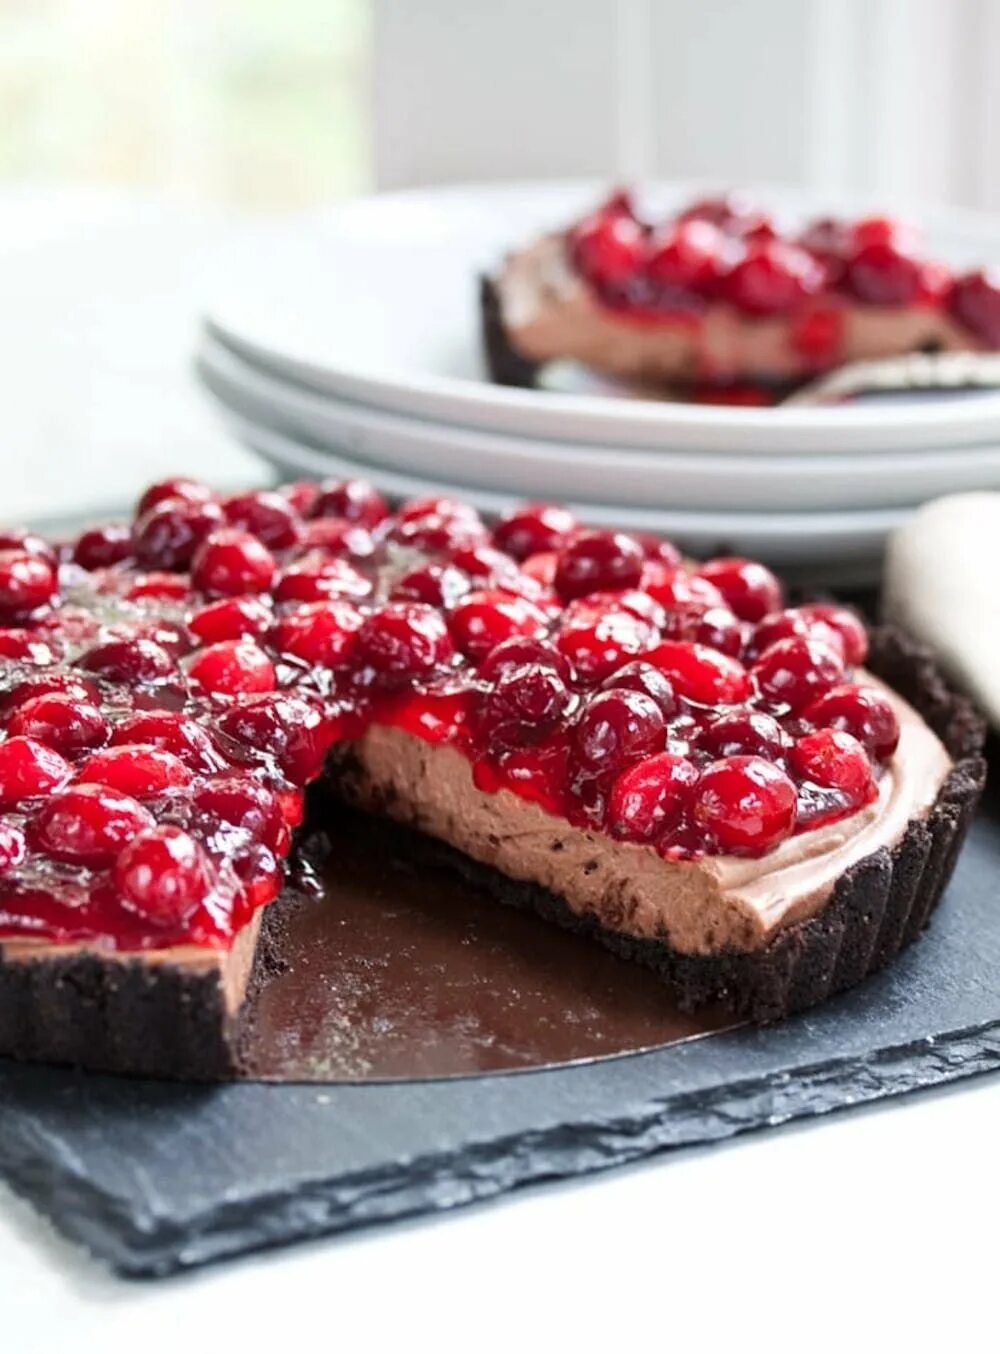 Cranberry Tart крем. Пирог с ягодами. Пирожное тарт с ягодами. Шоколадный пирог с клюквой.